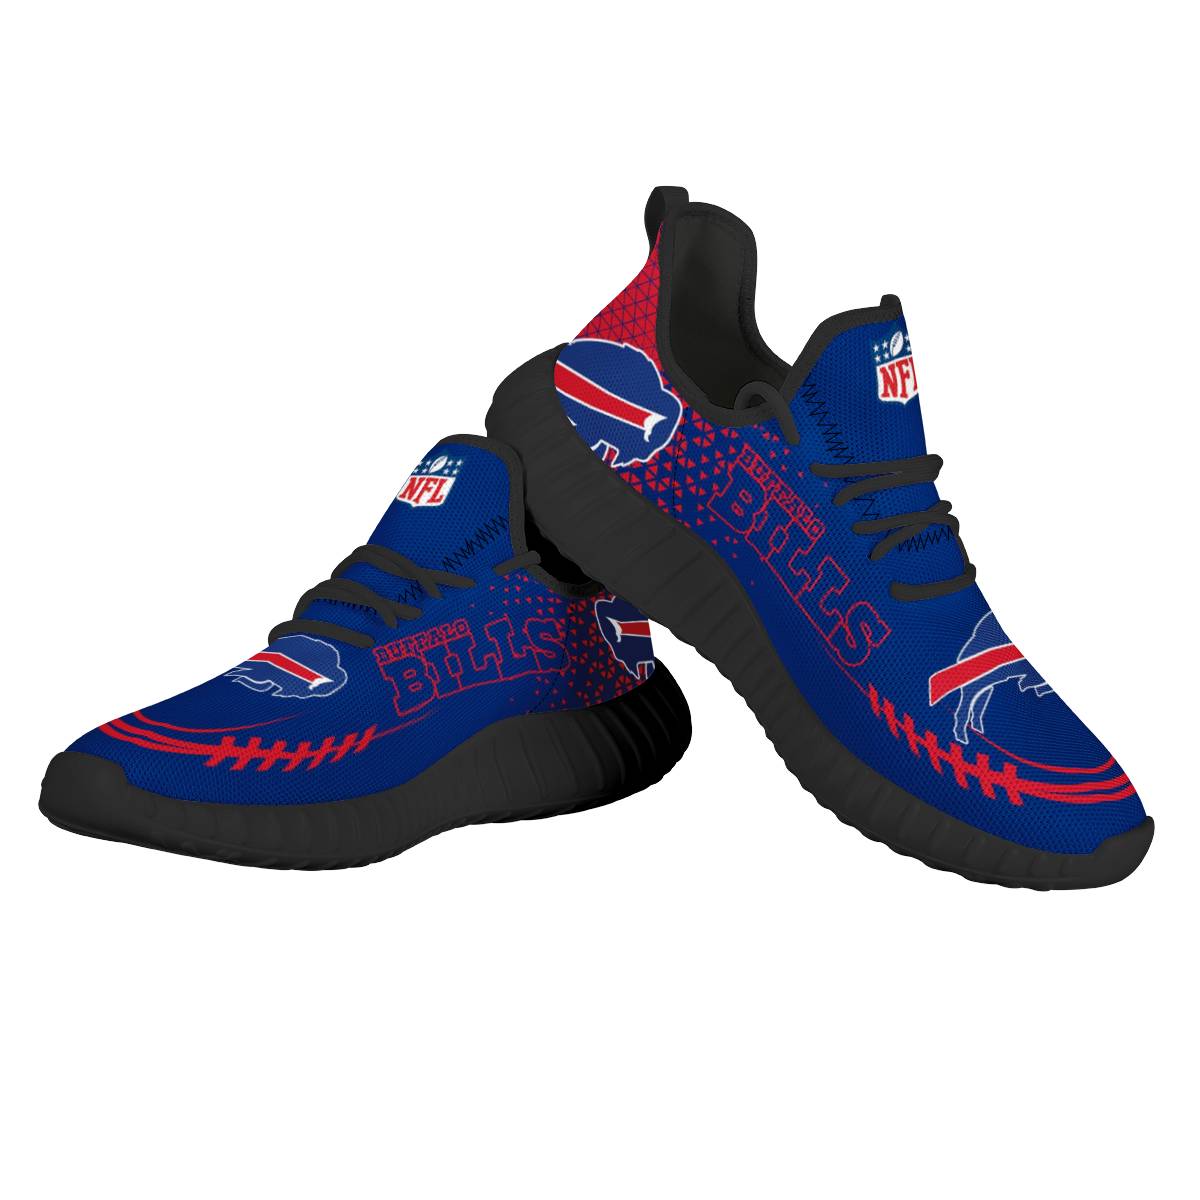 Women's NFL Buffalo Bills Mesh Knit Sneakers/Shoes 002